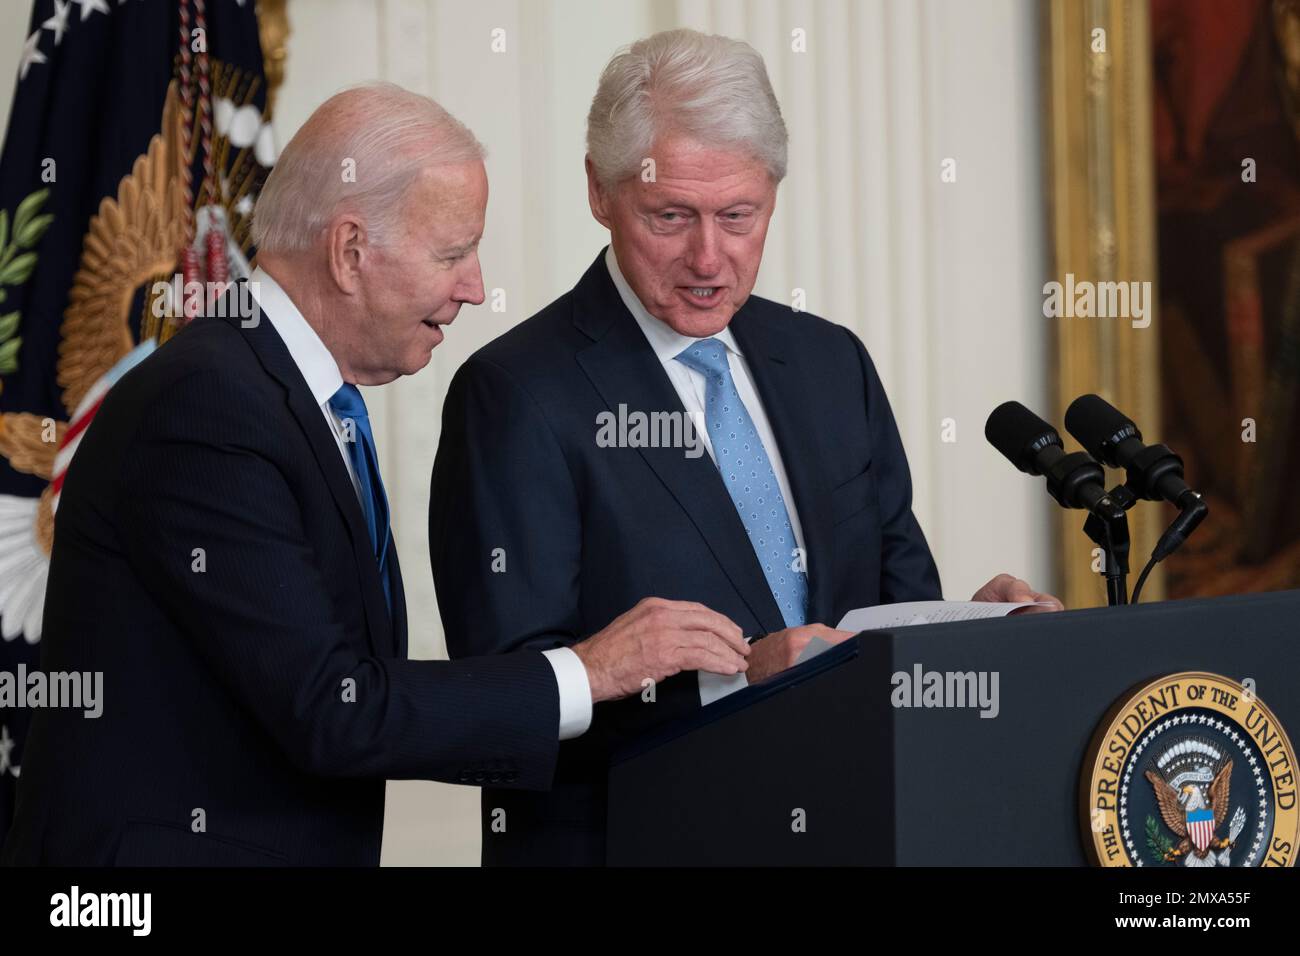 US-Präsident Joe Biden hilft dem ehemaligen US-Präsidenten Bill Clinton, seine Notizen zu finden, um Bemerkungen zum 30. Jahrestag des Family and Medical Leave Act im Weißen Haus in Washington, DC am 2. Februar 2023 zu machen. Kredit: Chris Kleponis/CNP/MediaPunch Stockfoto